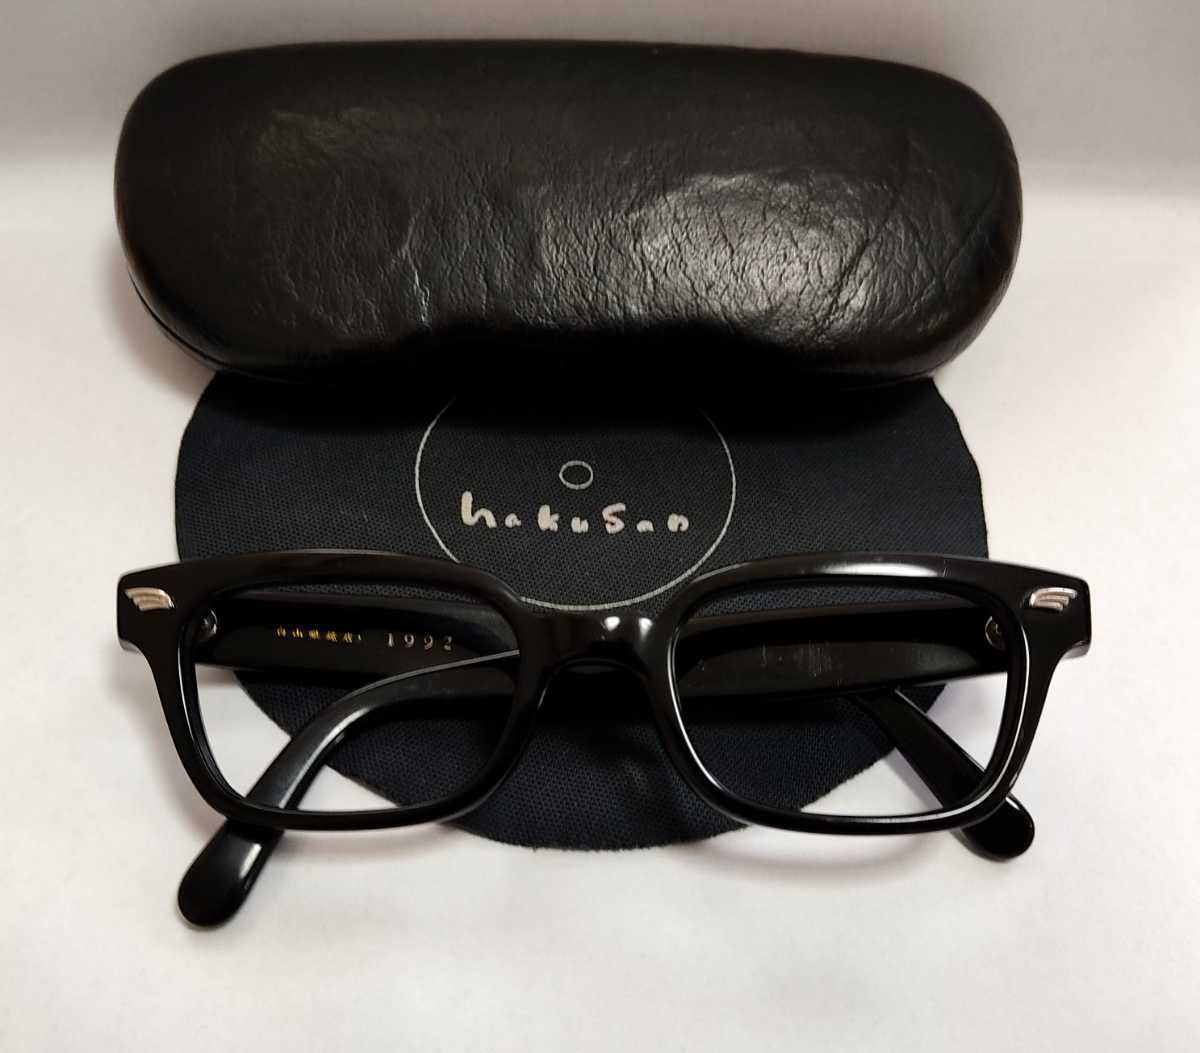 人気モデル 白山眼鏡店 1992 deco 白山眼鏡 ブラック 黒 メガネ 眼鏡